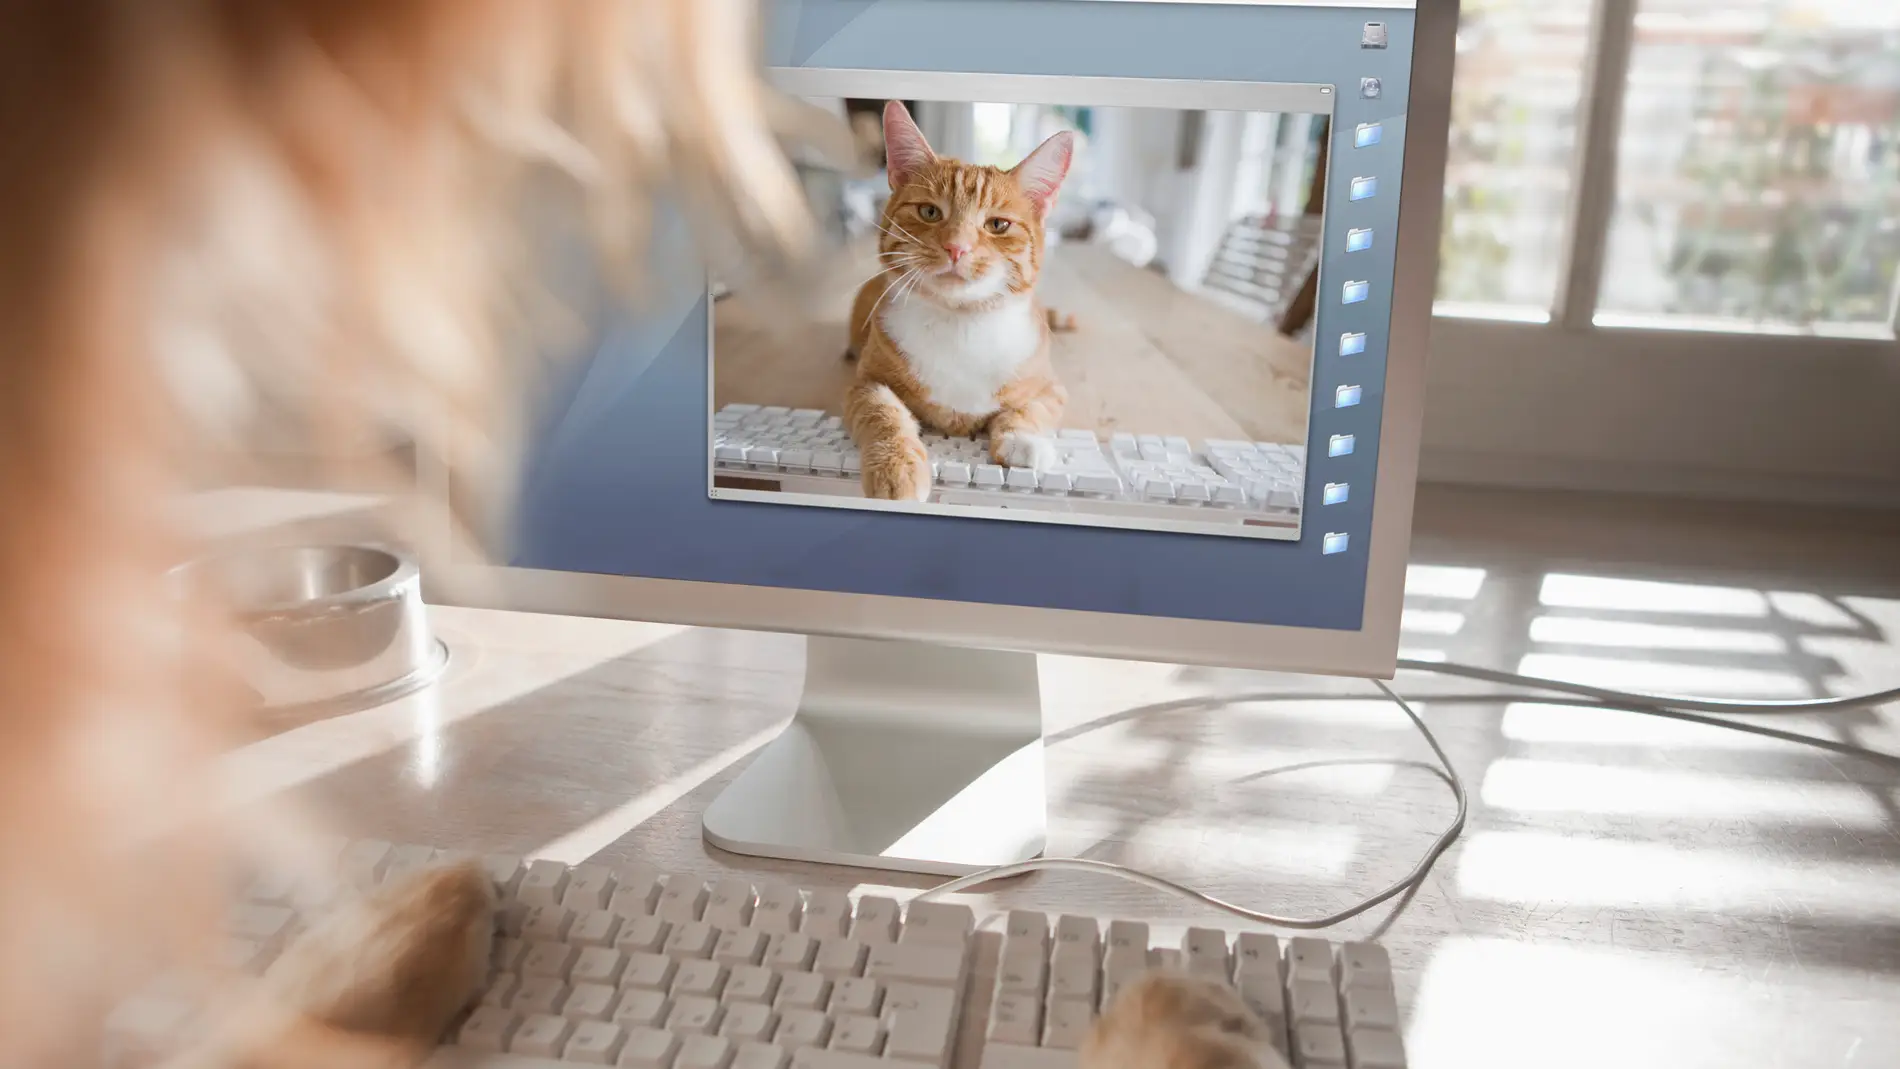 Las ventajas de ver vídeos de gatitos: positivismo y felicidad